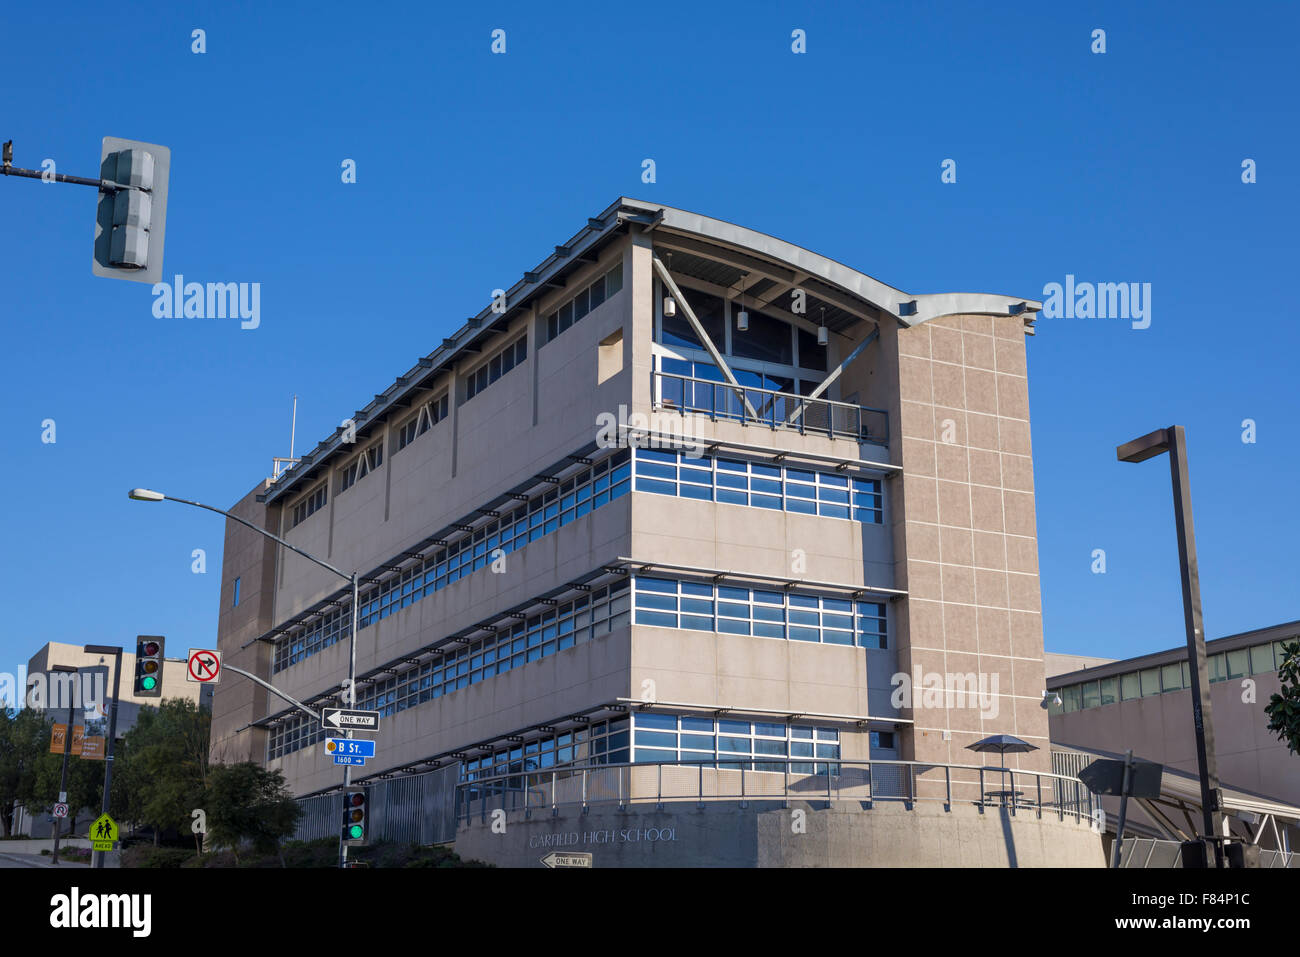 Garfield High School Gebäude. San Diego, Kalifornien, USA. Stockfoto